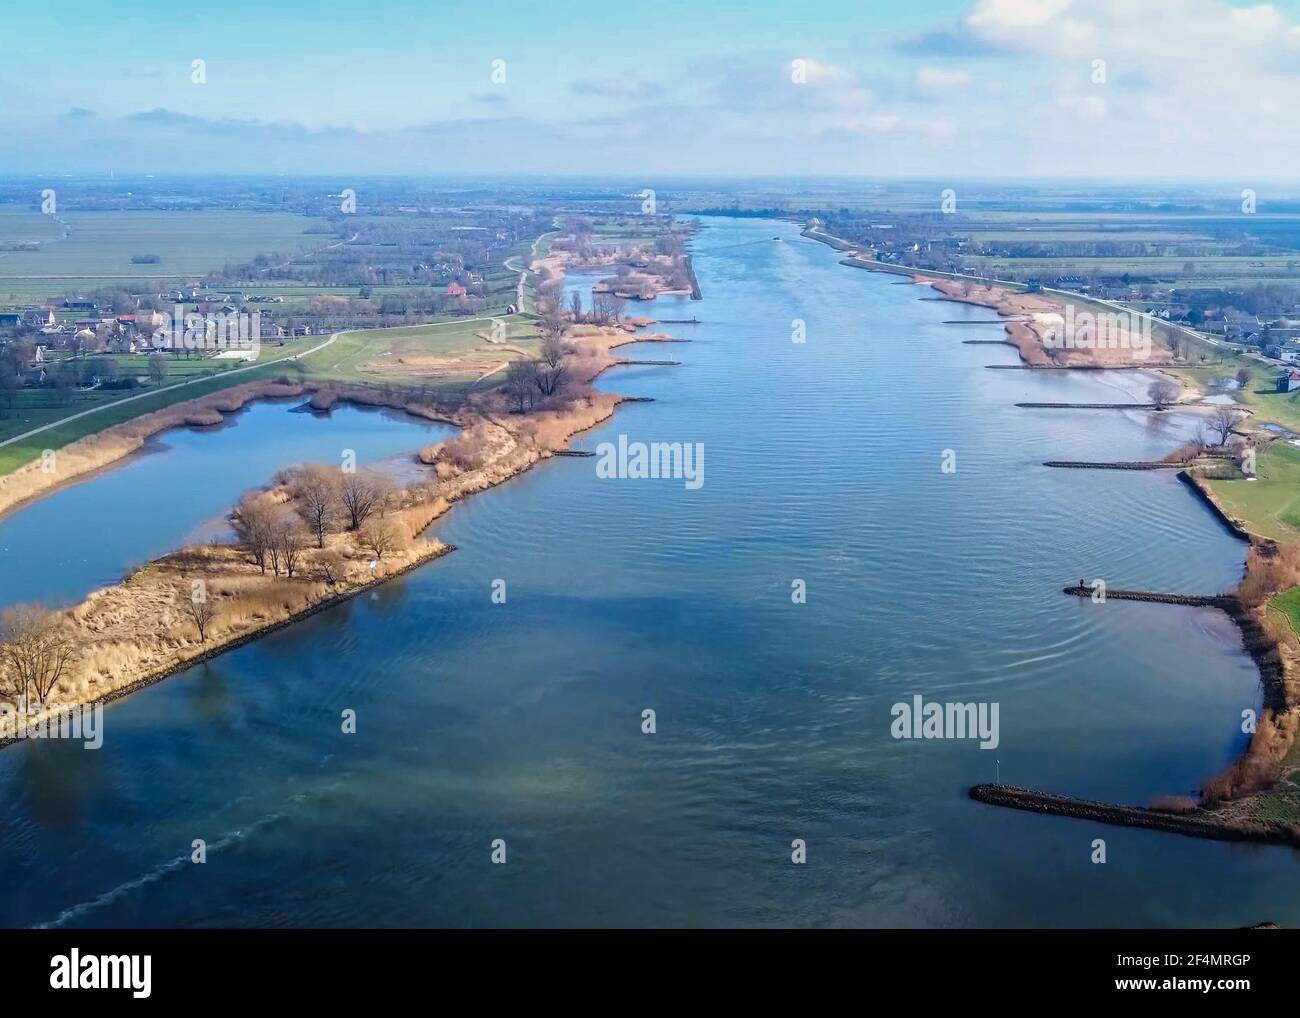 C'est une image de drone prise au-dessus de la rivière Lek aux pays-Bas. Entre les villages de Nieuwpoort et Schoonhoven. Banque D'Images